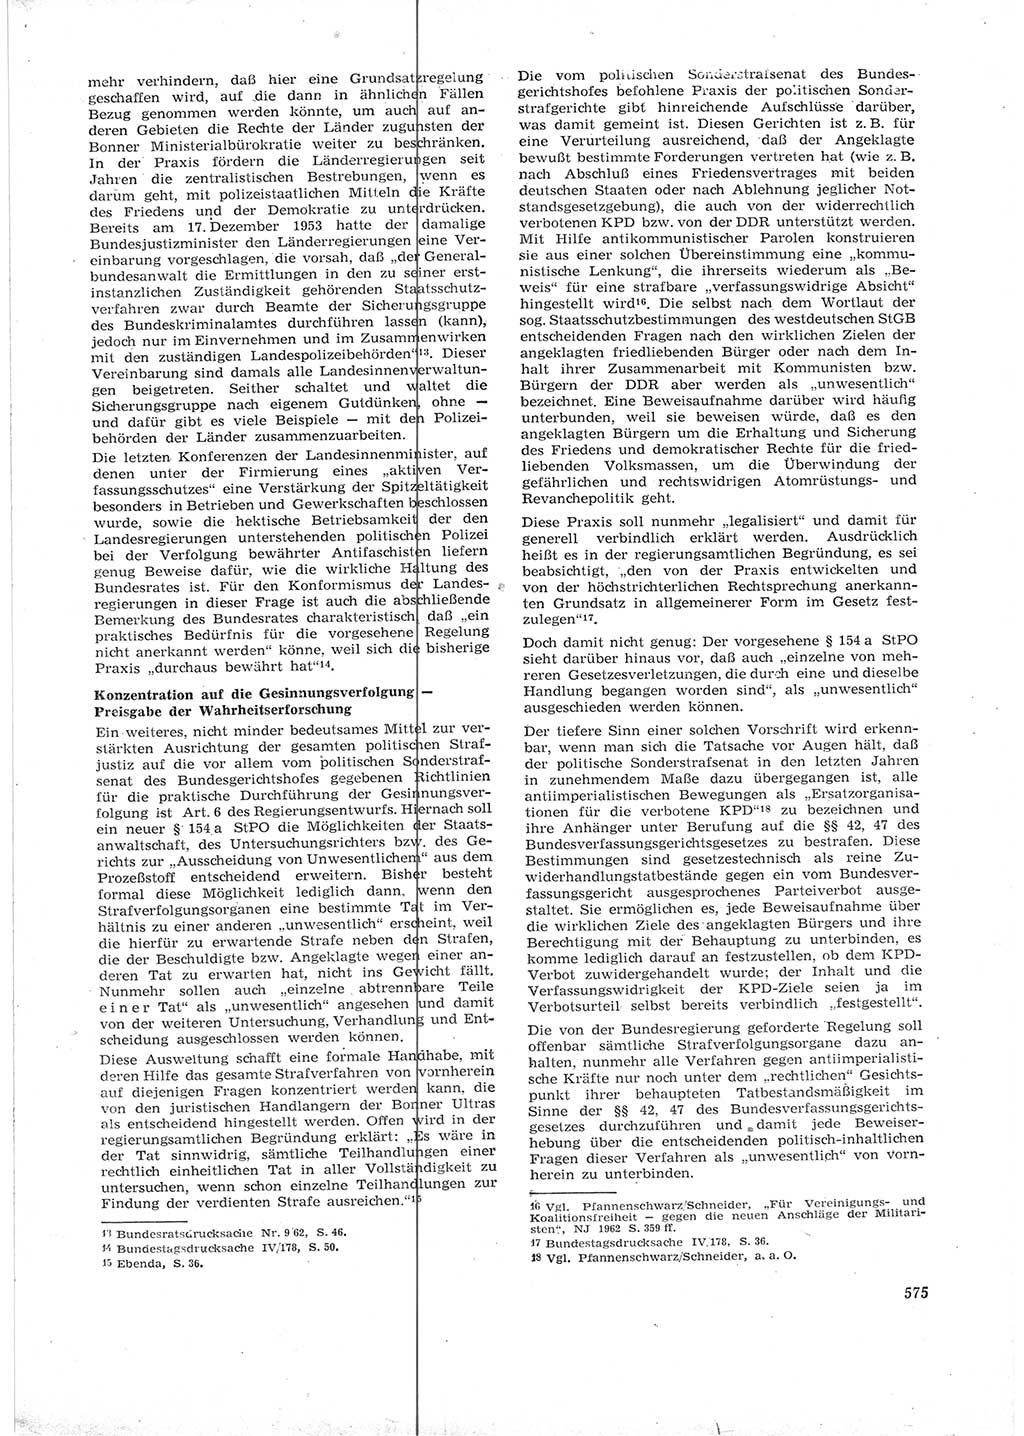 Neue Justiz (NJ), Zeitschrift für Recht und Rechtswissenschaft [Deutsche Demokratische Republik (DDR)], 16. Jahrgang 1962, Seite 575 (NJ DDR 1962, S. 575)